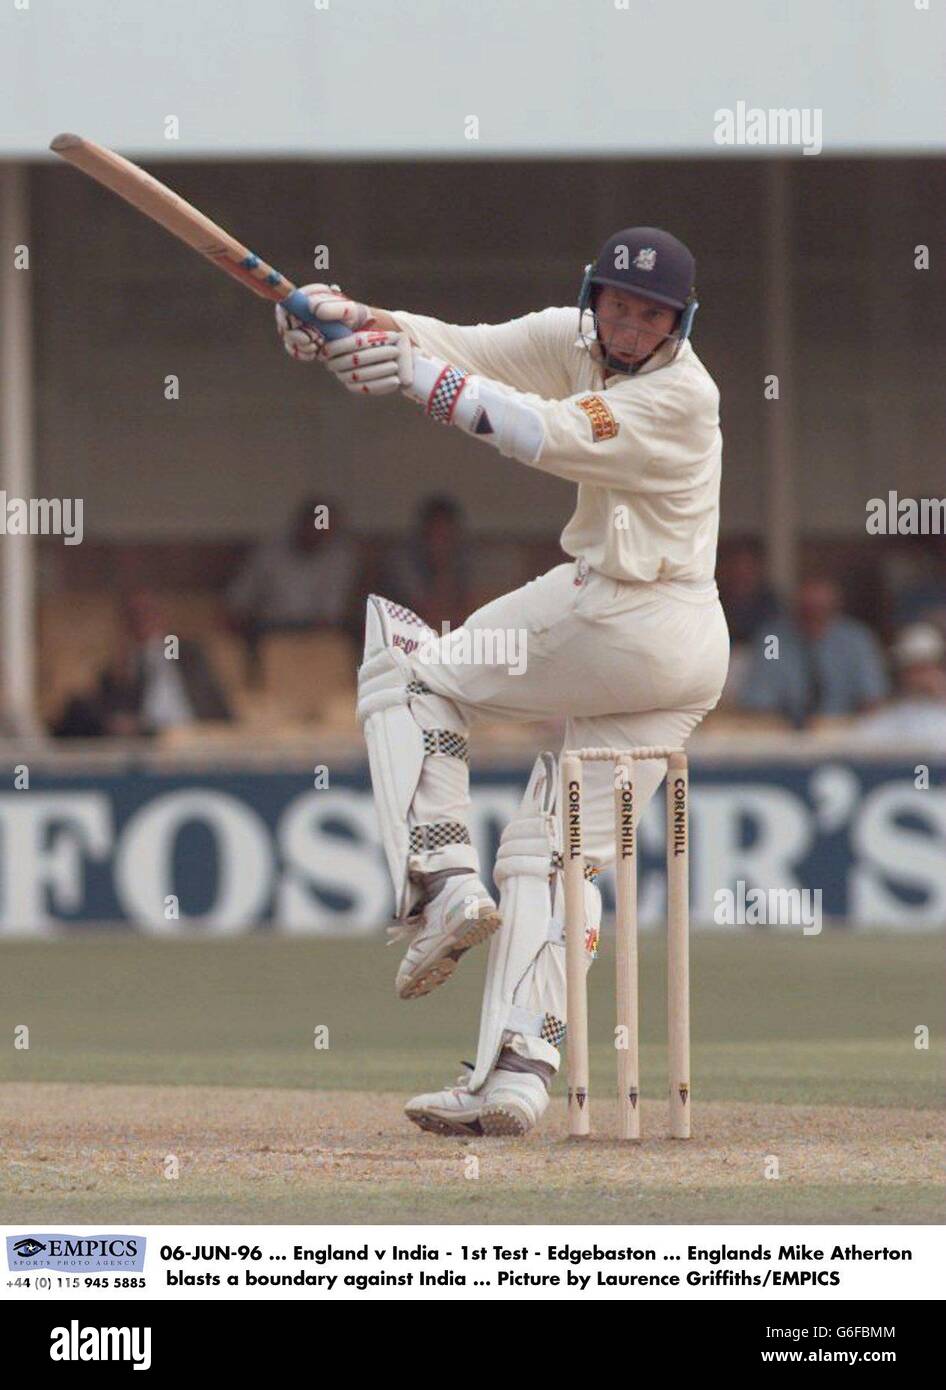 06-JUIN-96 ... Angleterre / Inde - 1er Test - Edgebaston ... Englands Mike Atherton a une frontière contre l'Inde ... Photo de Laurence Griffiths/EMPICS Banque D'Images